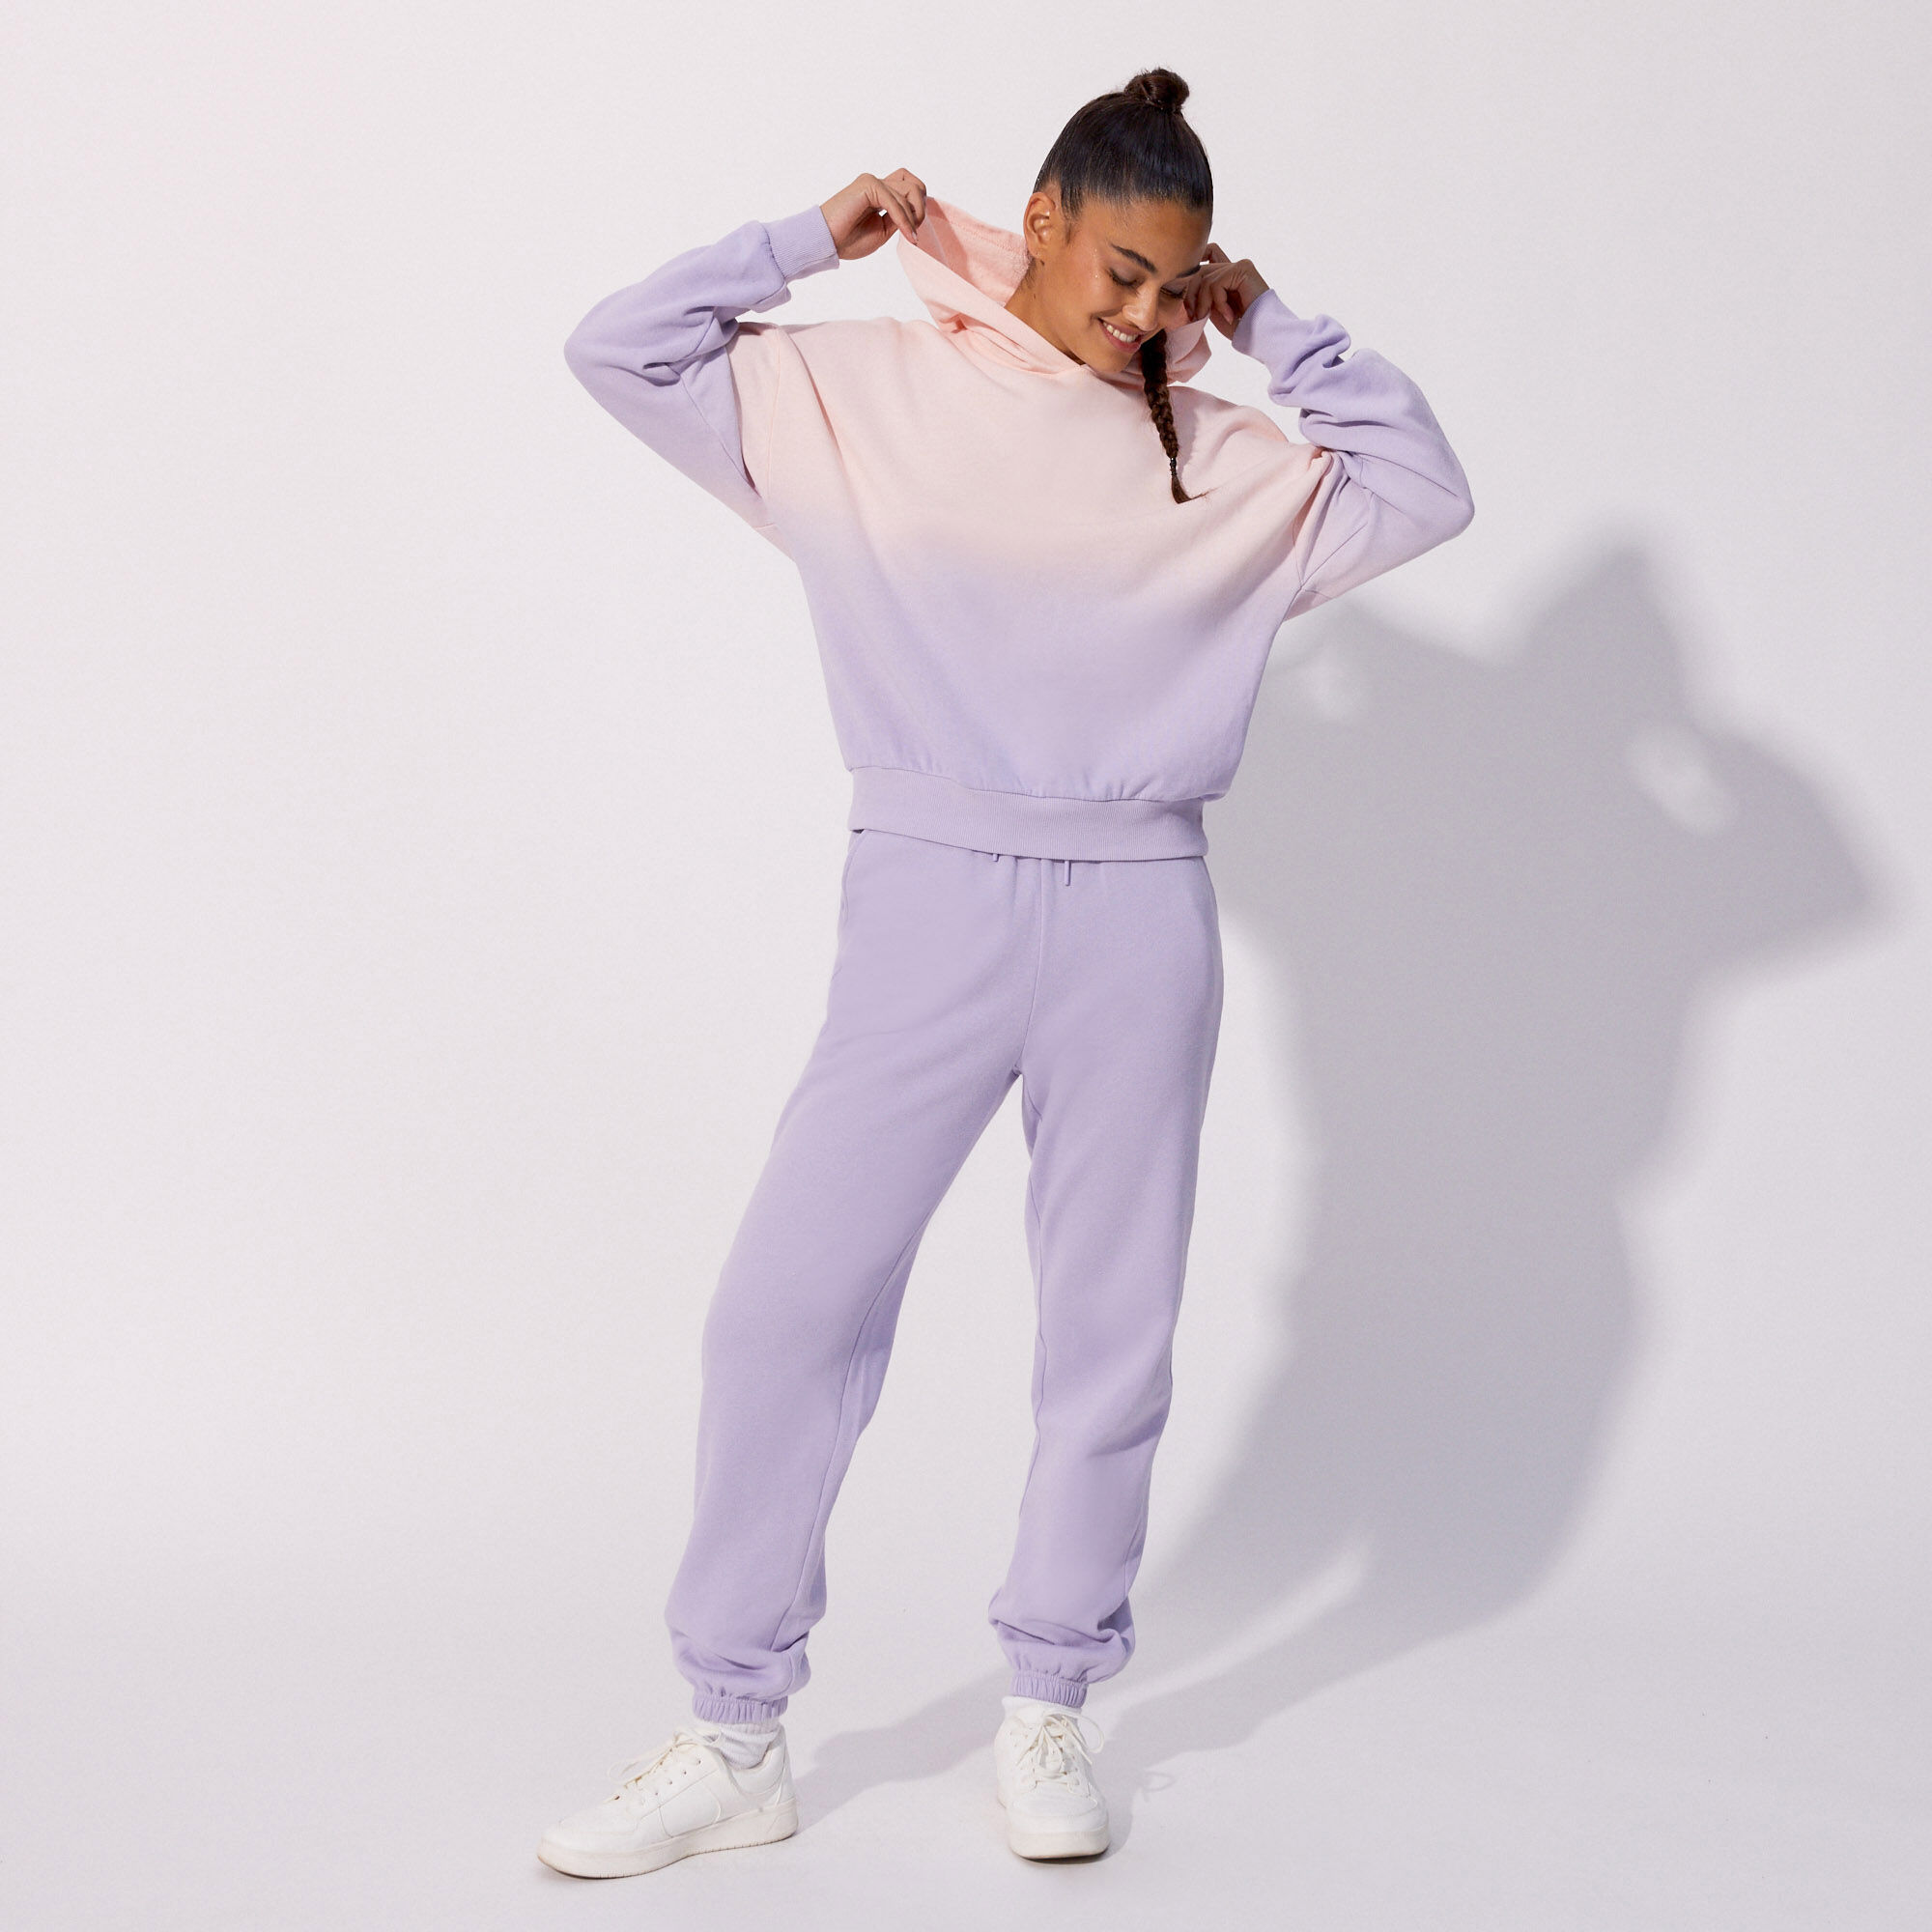 legging imprimé stitch et angel - violet - Undiz, pyjama stitch